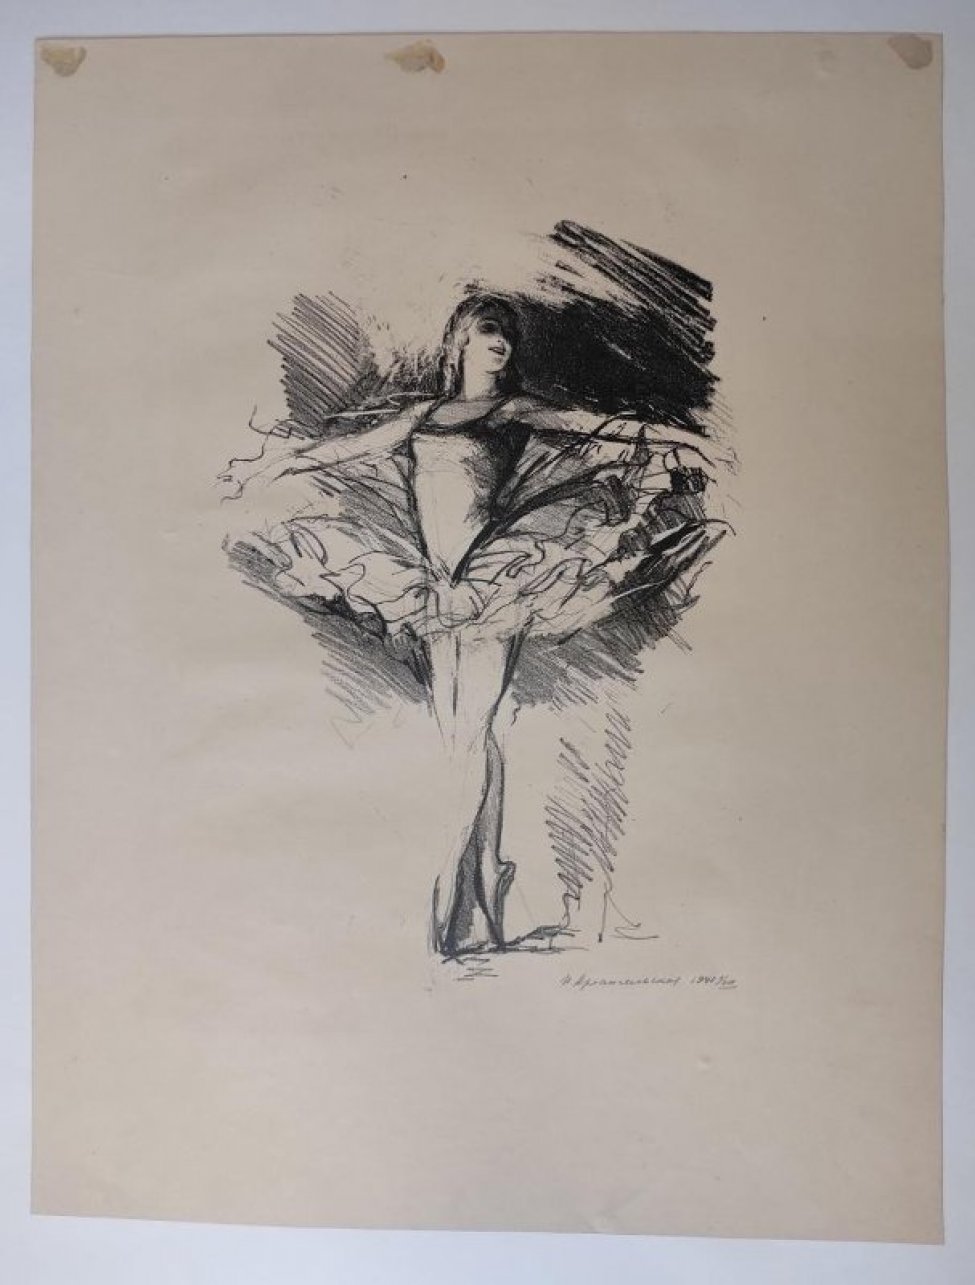 Изображена балерина в костюме «лебедя» на пальцах в V-й позиции epollemente croisee, руки на II-й позиции allongee.